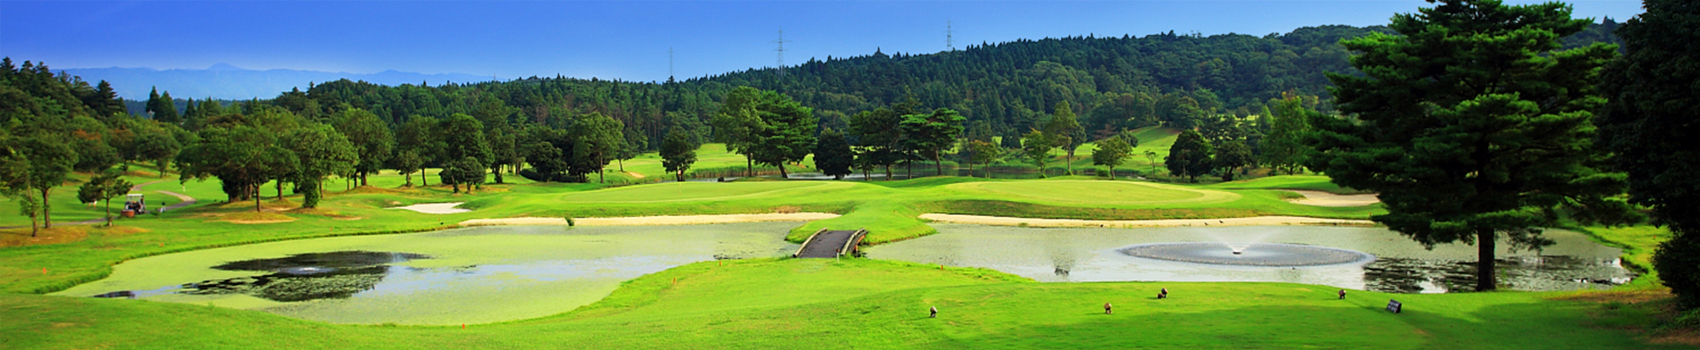 チェリーゴルフクラブ天草コース、熊本県上天草市大矢野町中